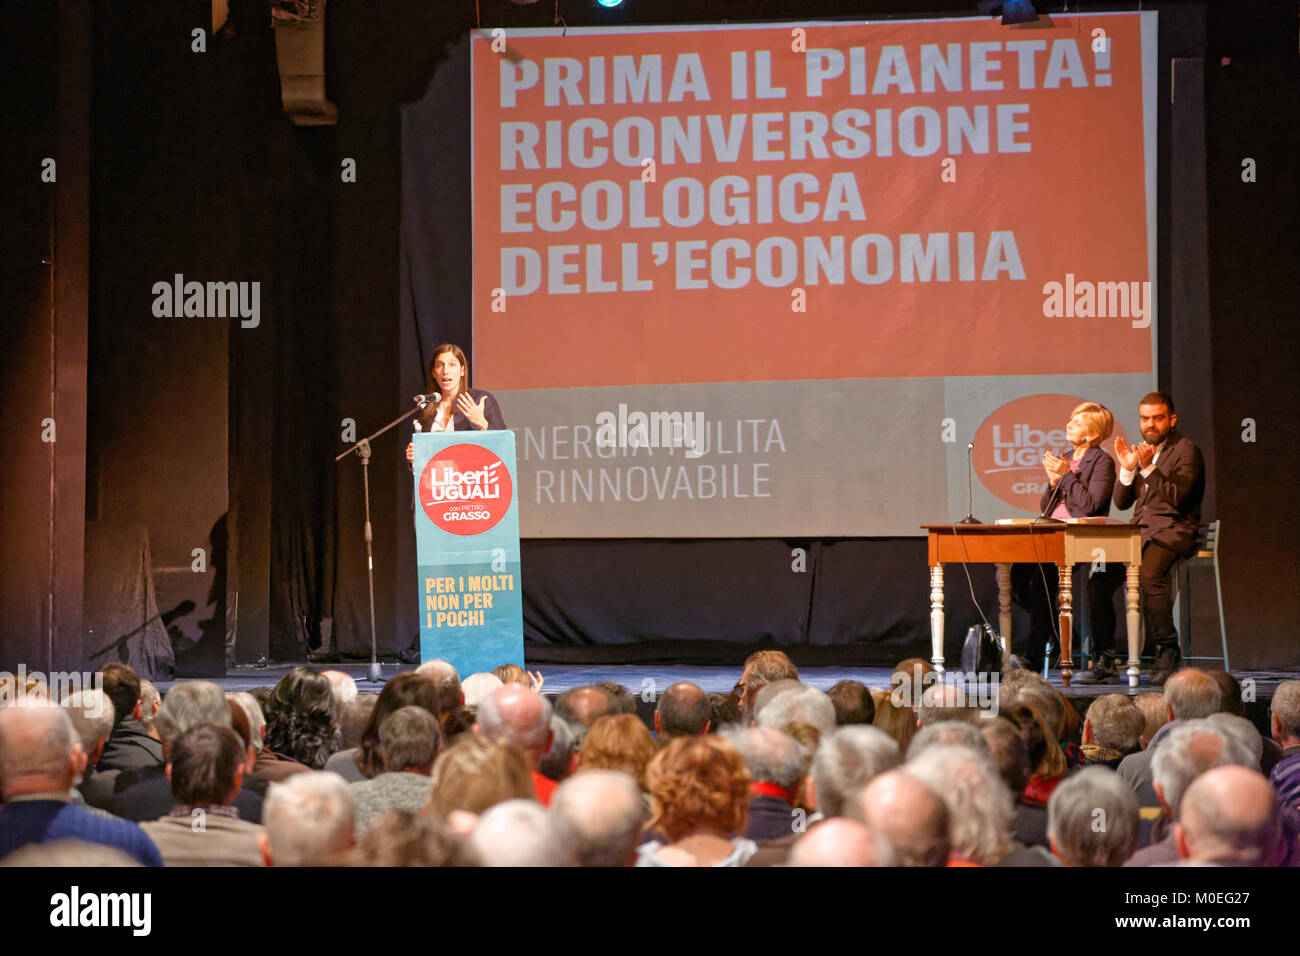 Torino, Italien. 21. Januar 2018. Mdep Elly Schlein sprechen bei "Liberi e Uguali" der Partei, die den Wahlkampf zu öffnen. MLBARIONA/Alamy leben Nachrichten Stockfoto